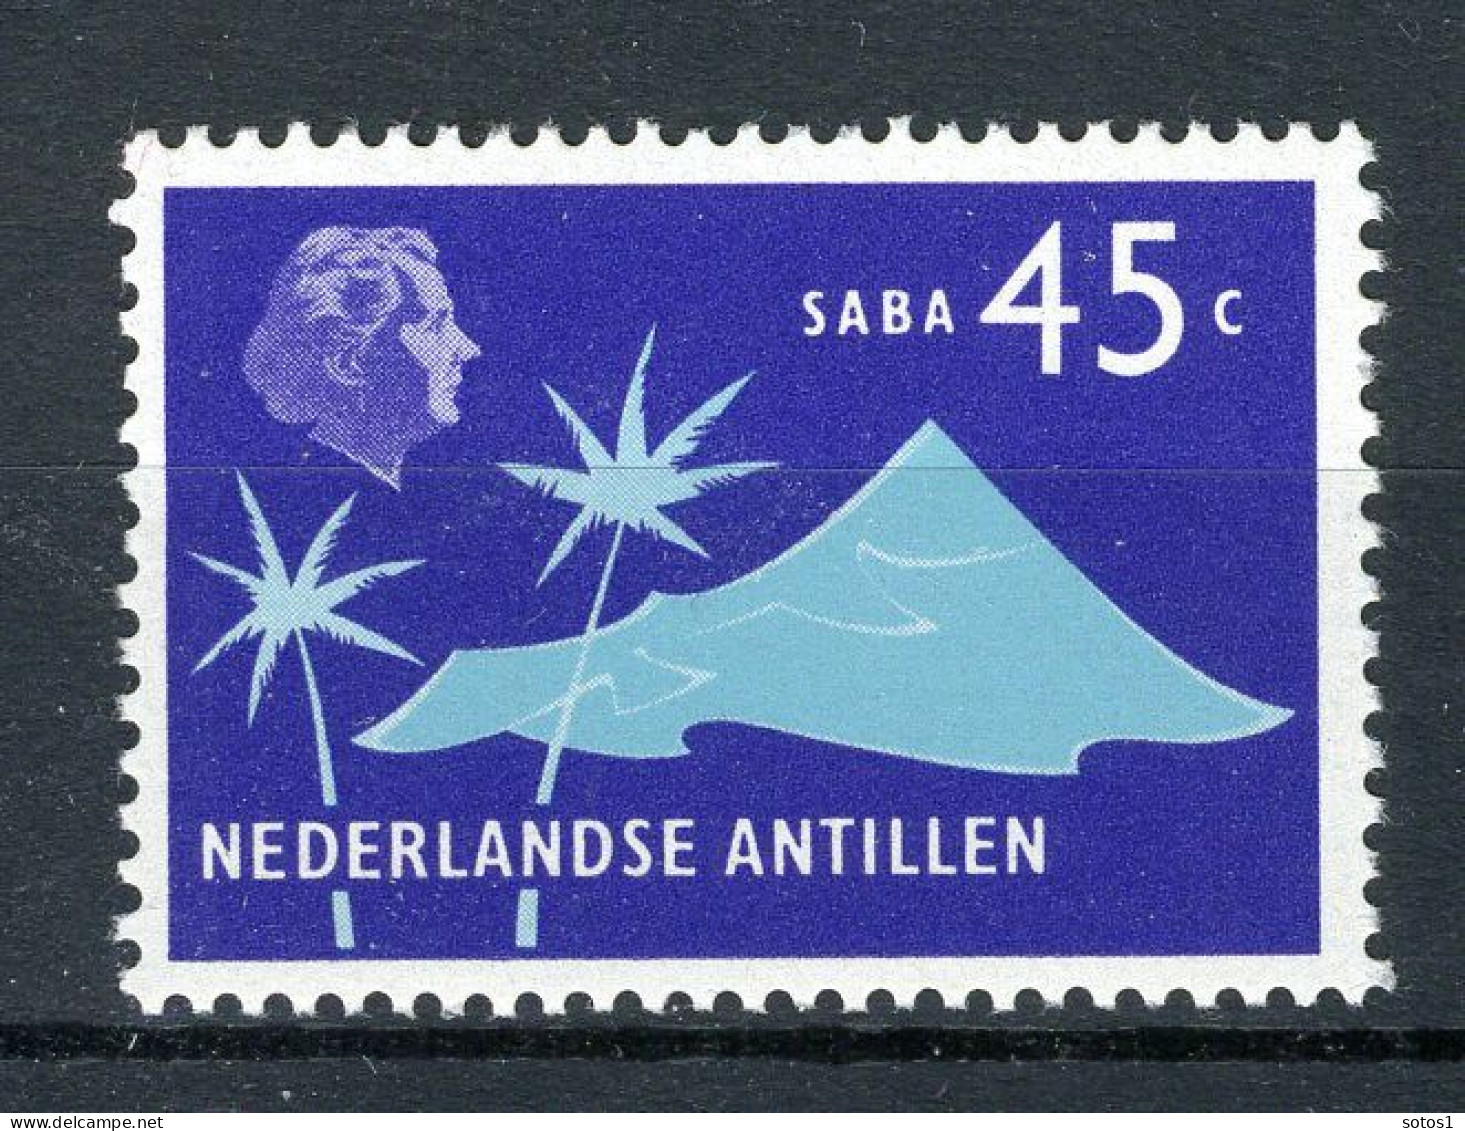 NL. ANTILLEN 460 MNH 1973 - Aanvullingswaarden, Koningin Juliana  - Niederländische Antillen, Curaçao, Aruba